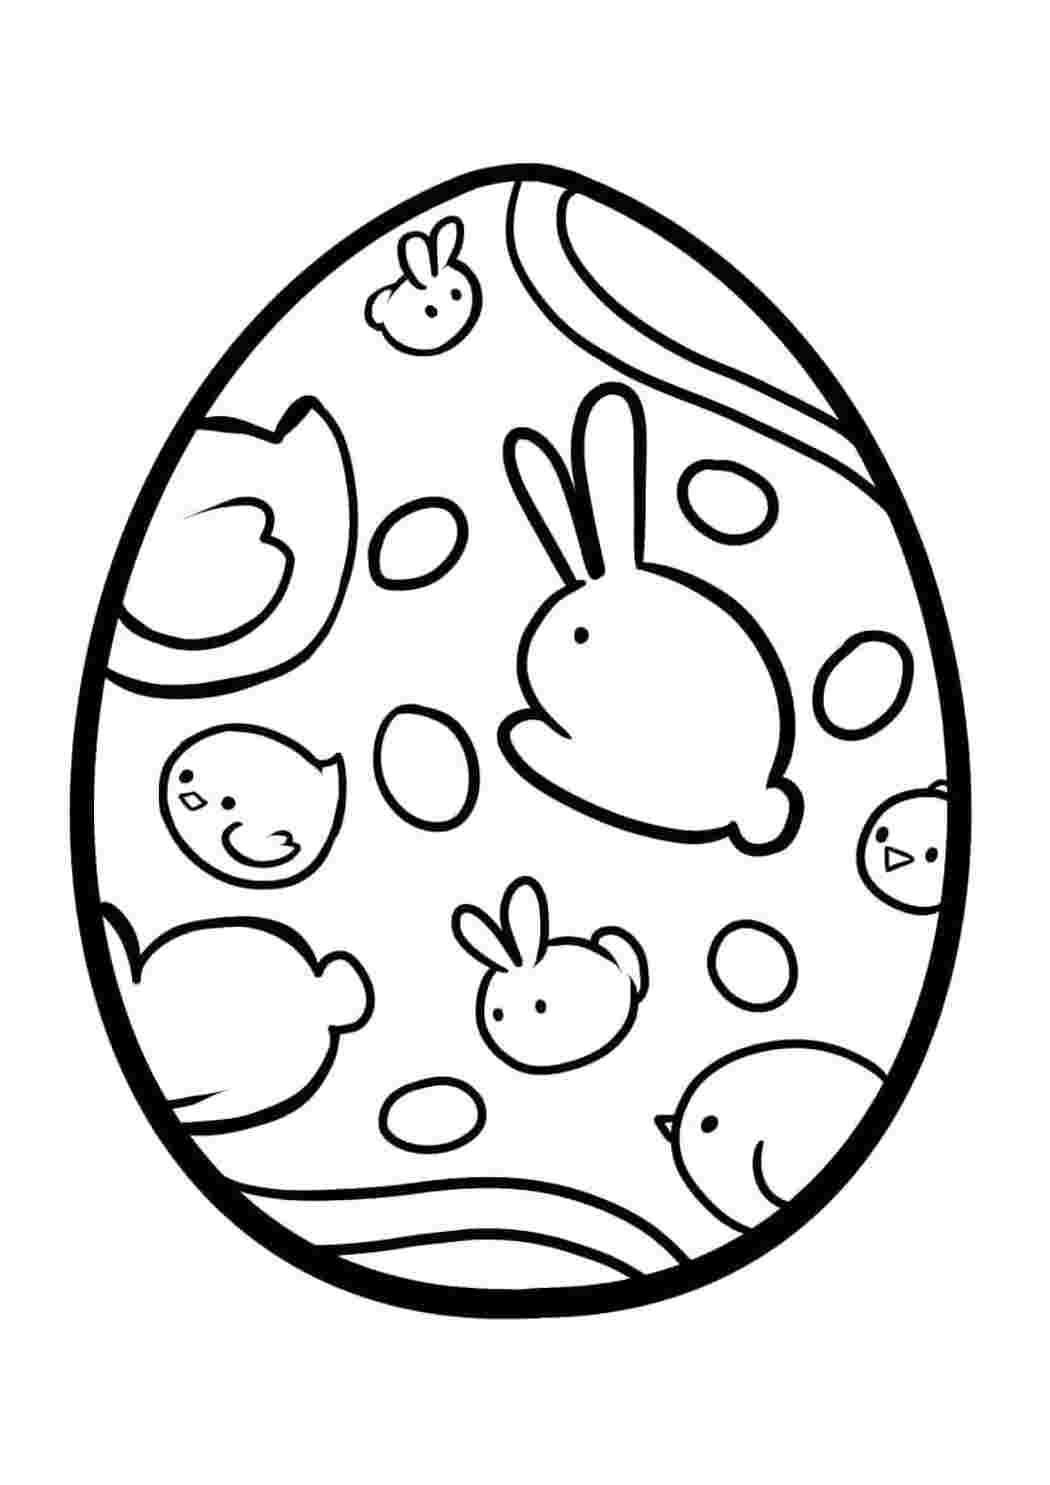 Распечатать раскраску яйца. Яйцо раскраска. Пасхальное яйцо раскраска. Трафарет яйца на Пасху. Яйца на Пасху раскраска.